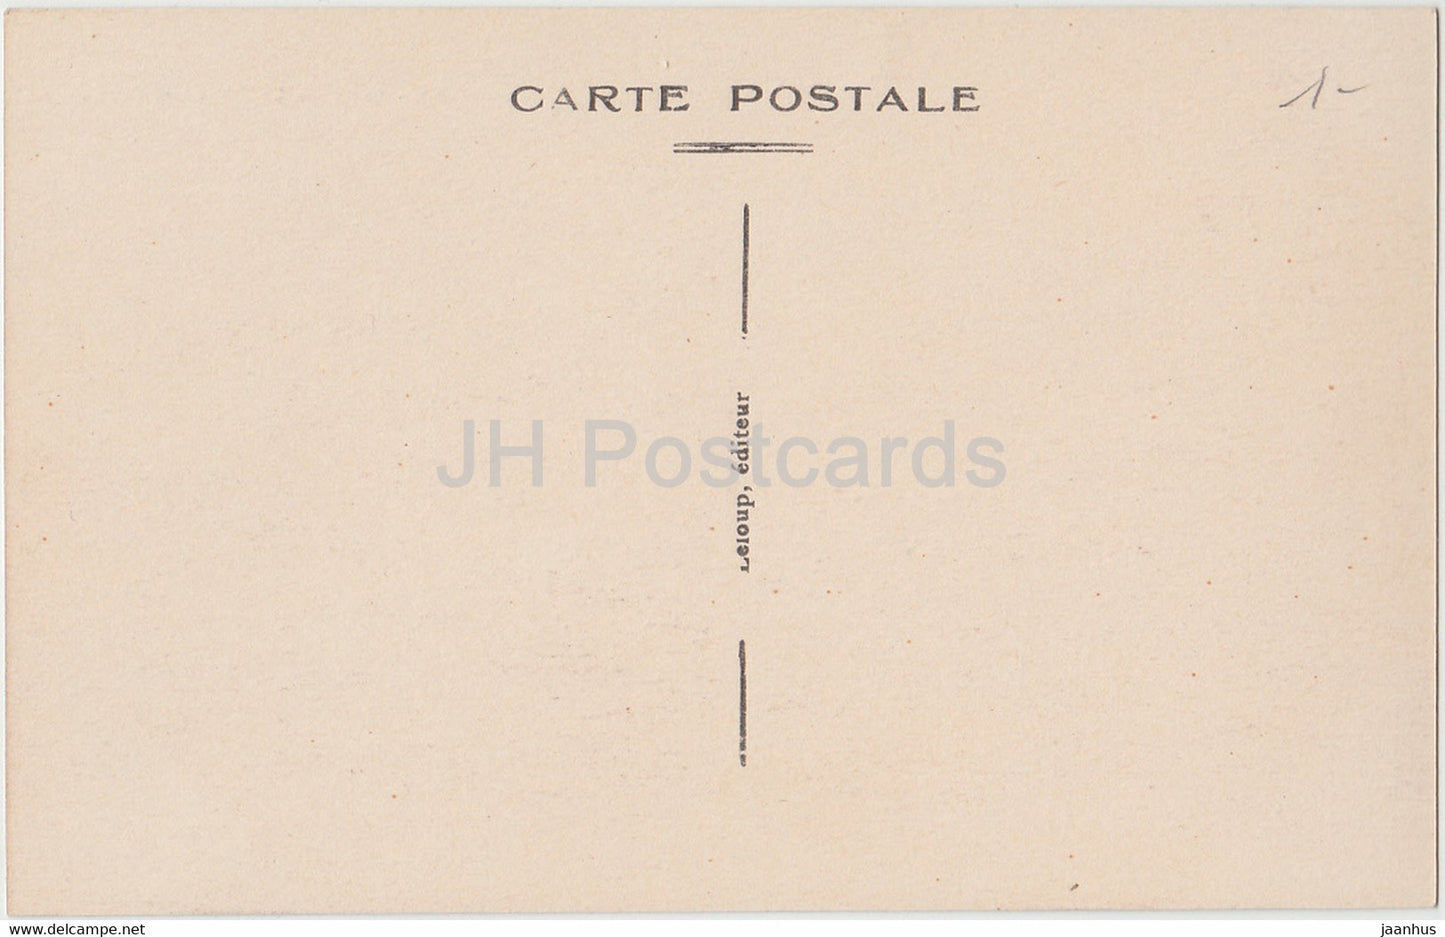 Mezieres - Le Batiment Communal - alte Postkarte - Frankreich - unbenutzt